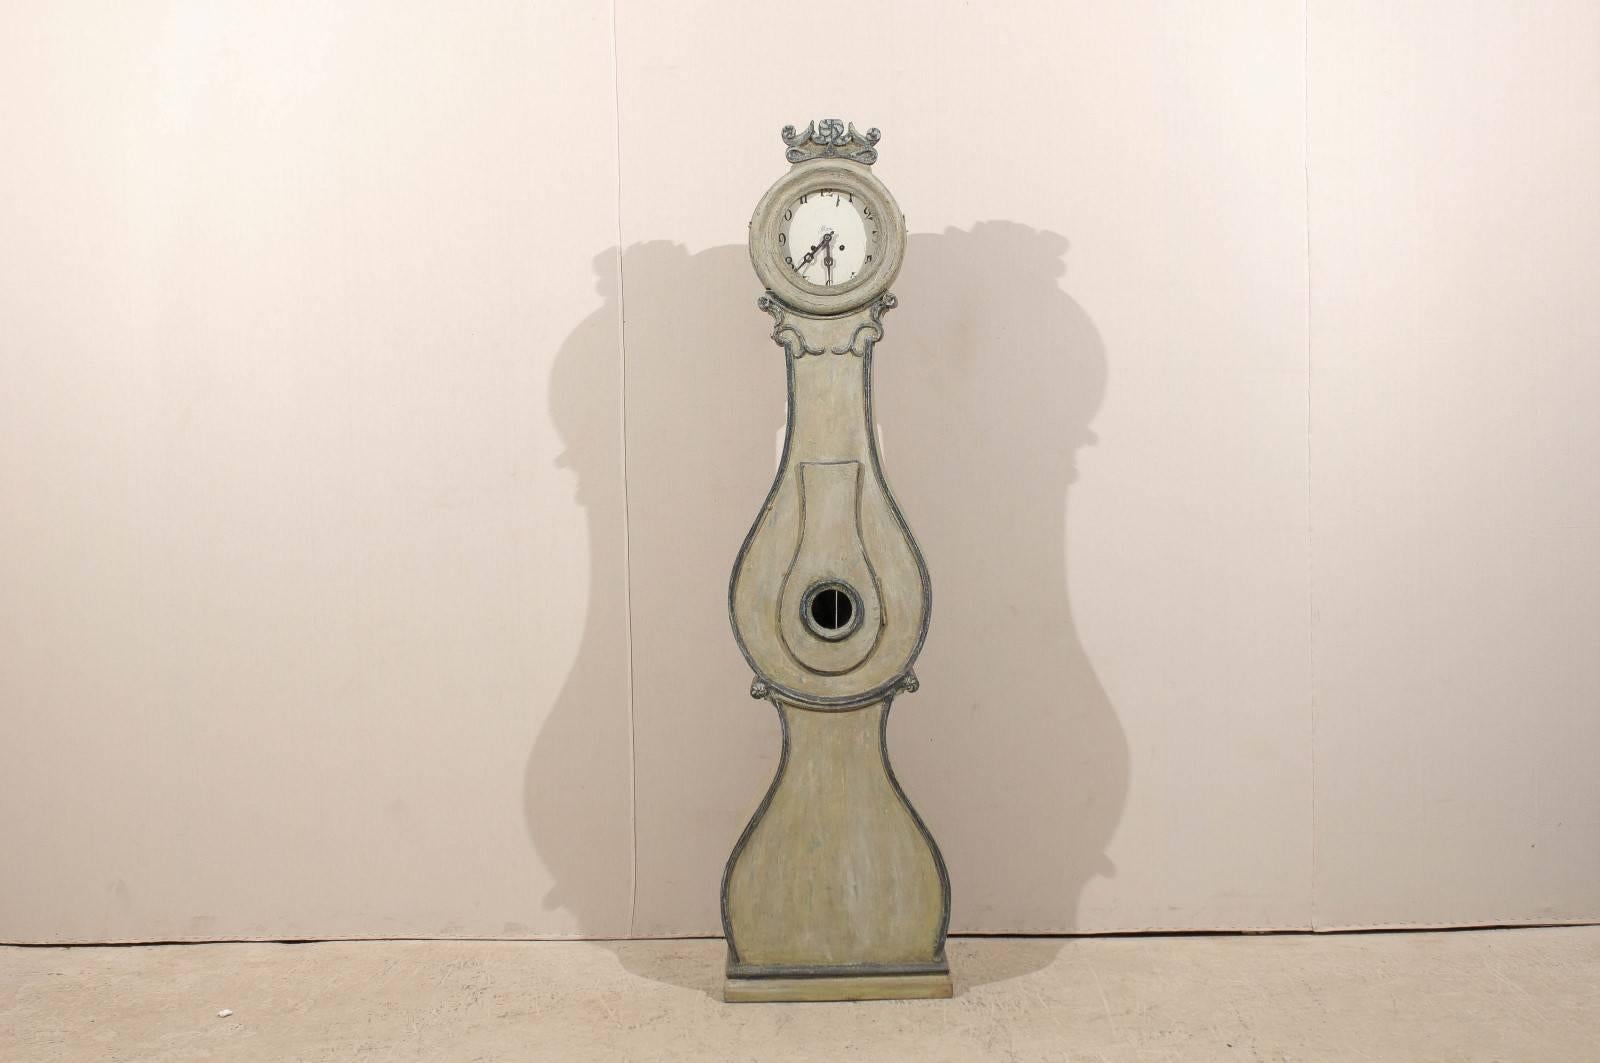 Une horloge suédoise du 19ème siècle avec des détails ornés. Cette horloge suédoise Fryksdahl de Värmland présente une crête joliment sculptée au sommet avec une rose et des rosettes stylisées. Le motif de la rosette est repris sur le col et la